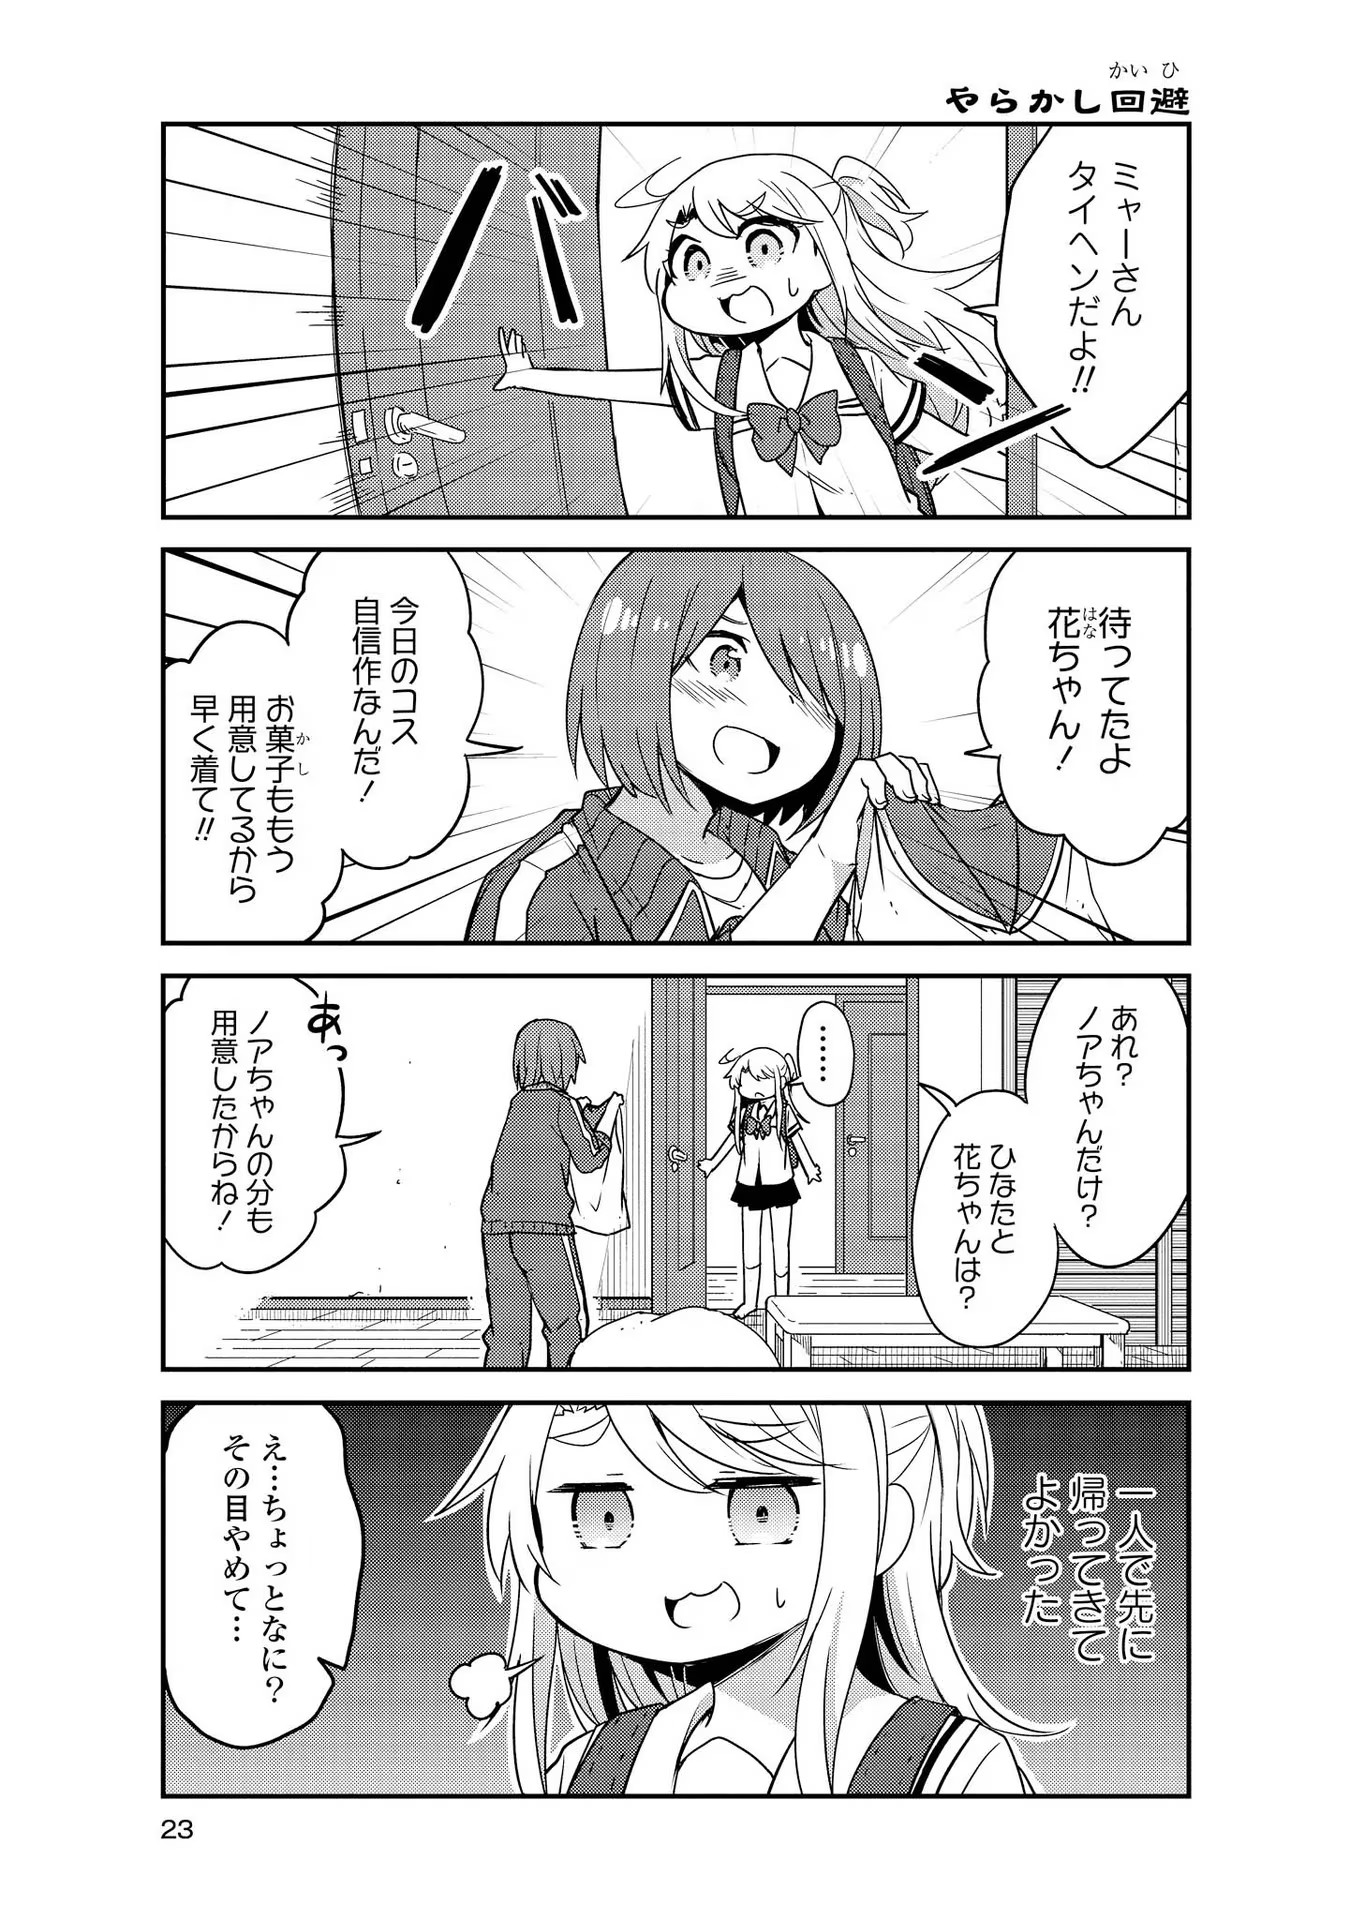 Watashi ni Tenshi ga Maiorita! - Chapter 22 - Page 3